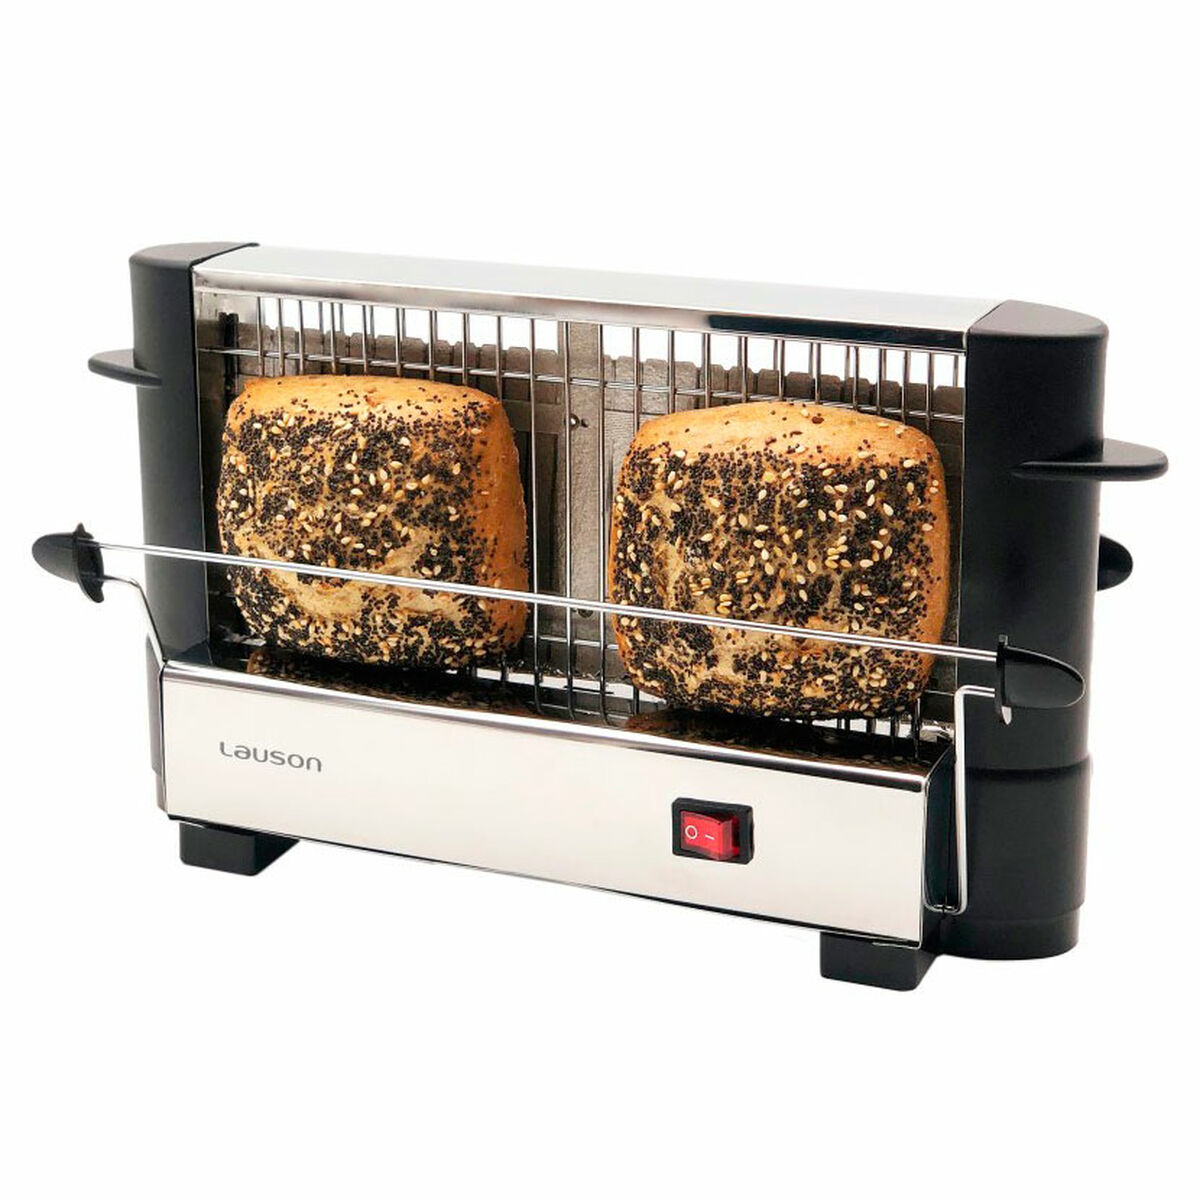 Toaster Lauson ATT 114 Edelstahl 750 W